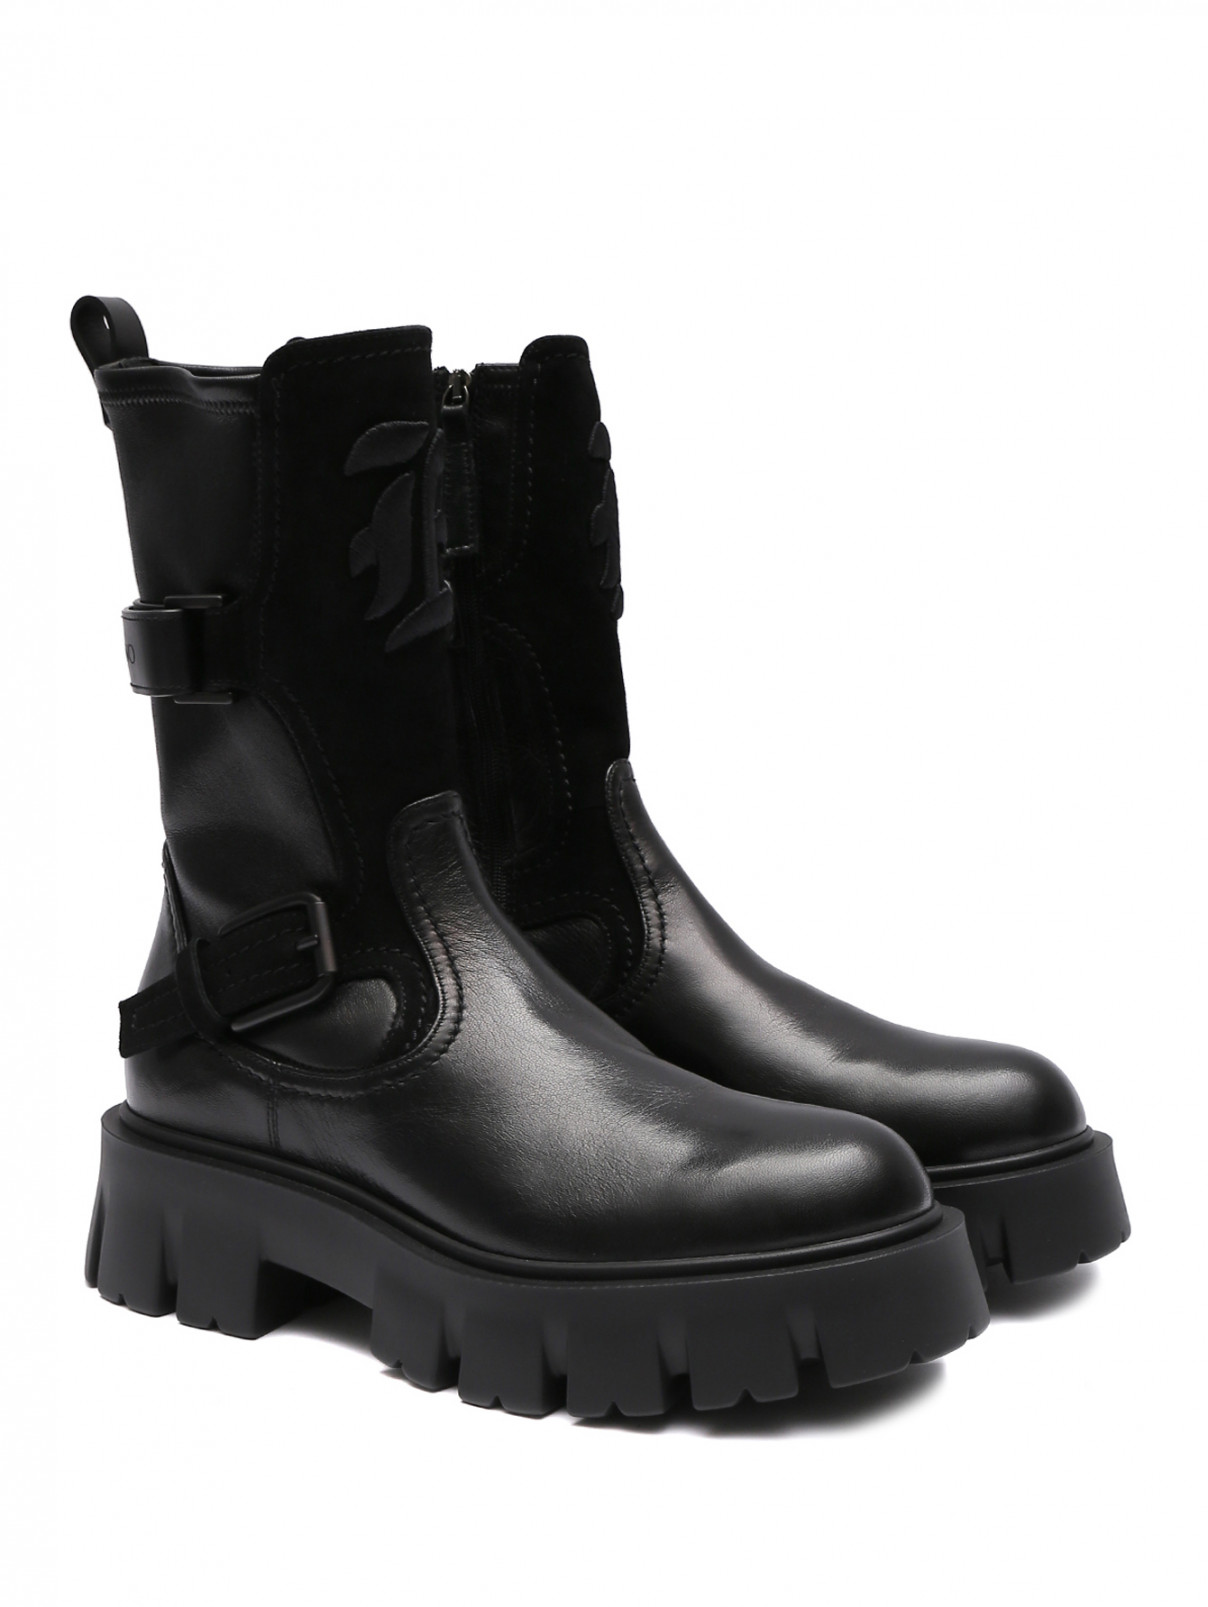 Комбинированные ботинки из кожи на грубой подошве Ermanno Scervino  –  Общий вид  – Цвет:  Черный